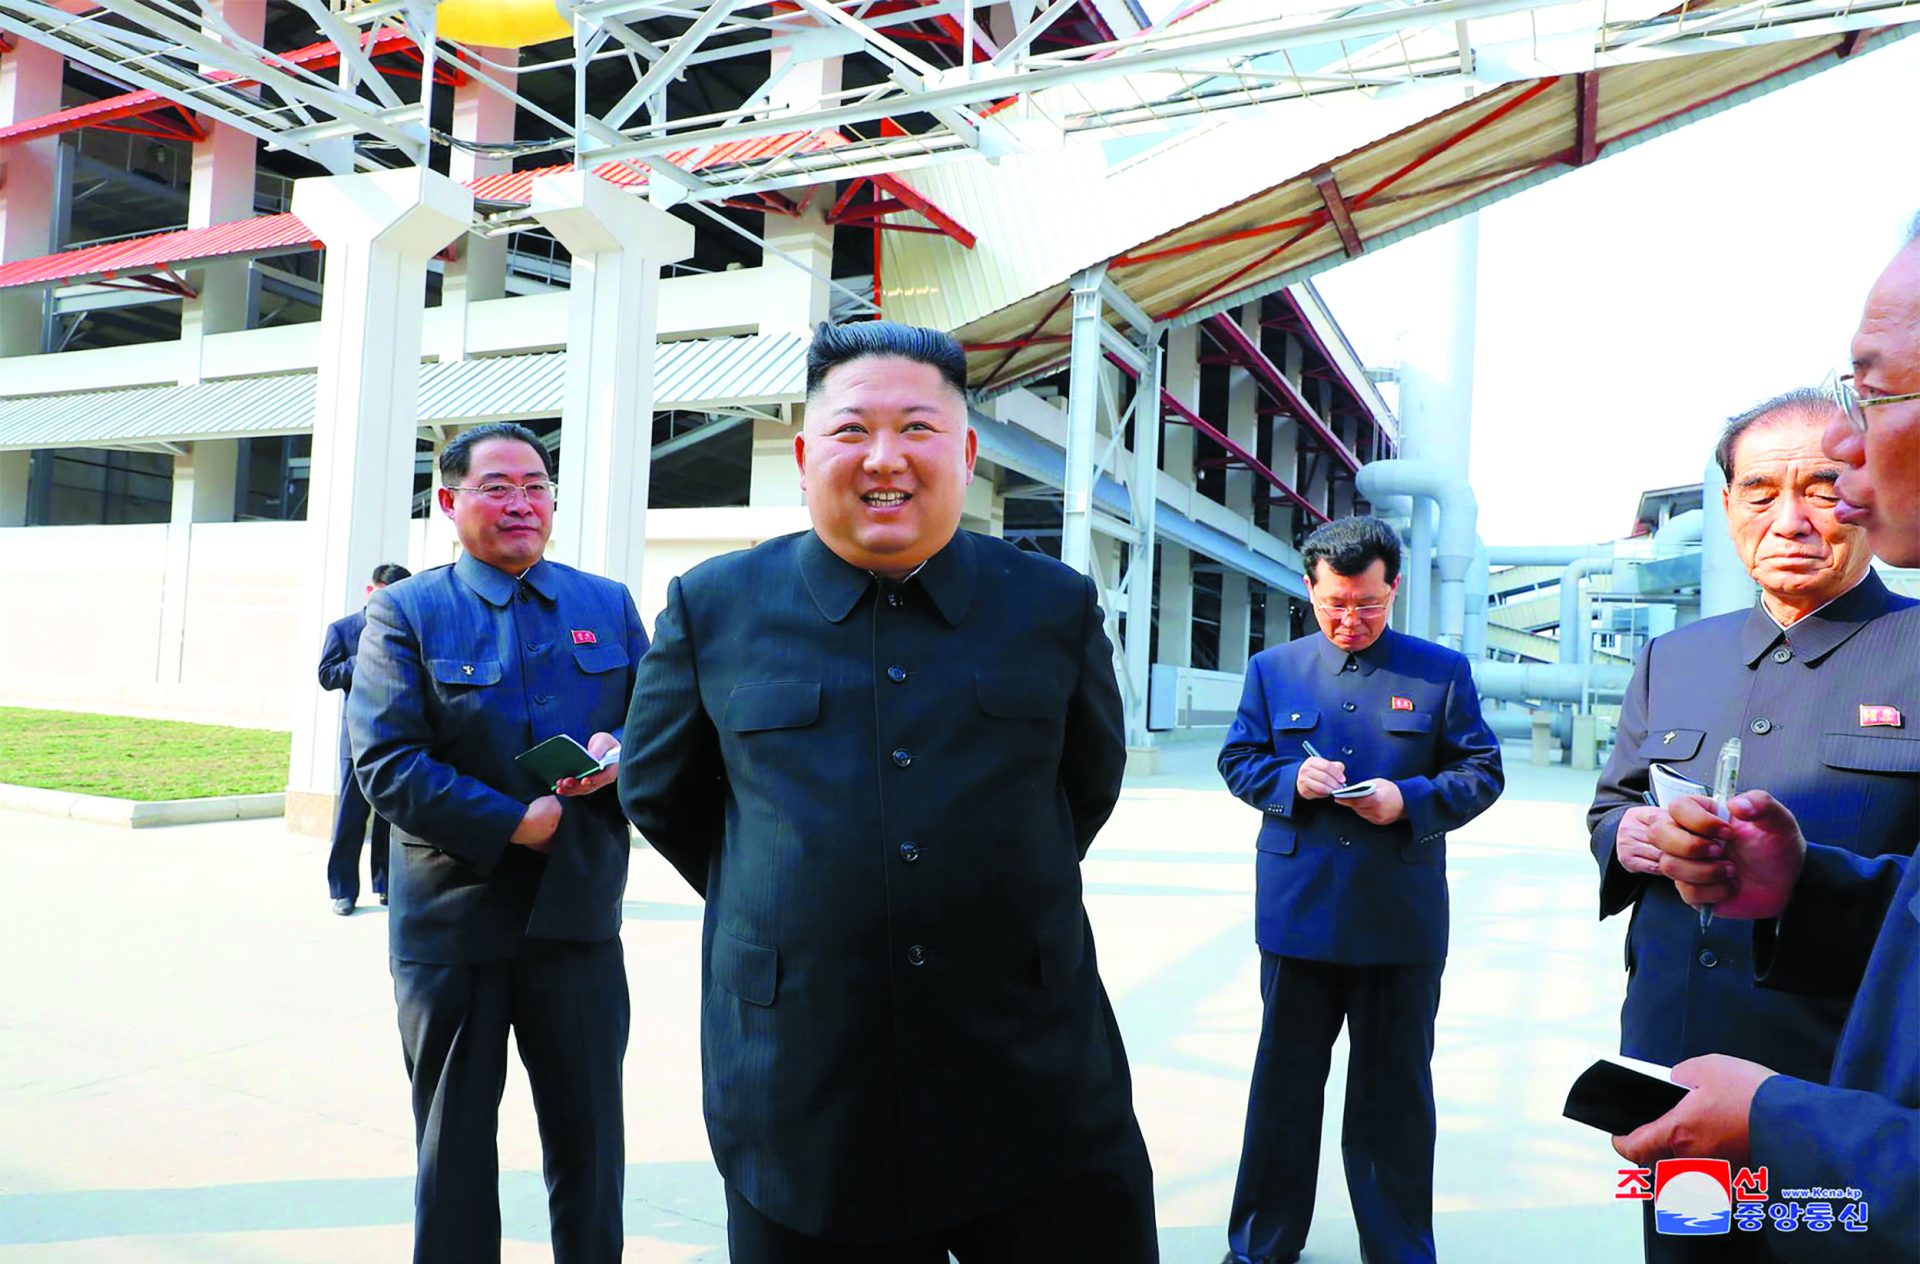 Pyongyang. Kim retorna e pouco depois há troca de disparos na fronteira